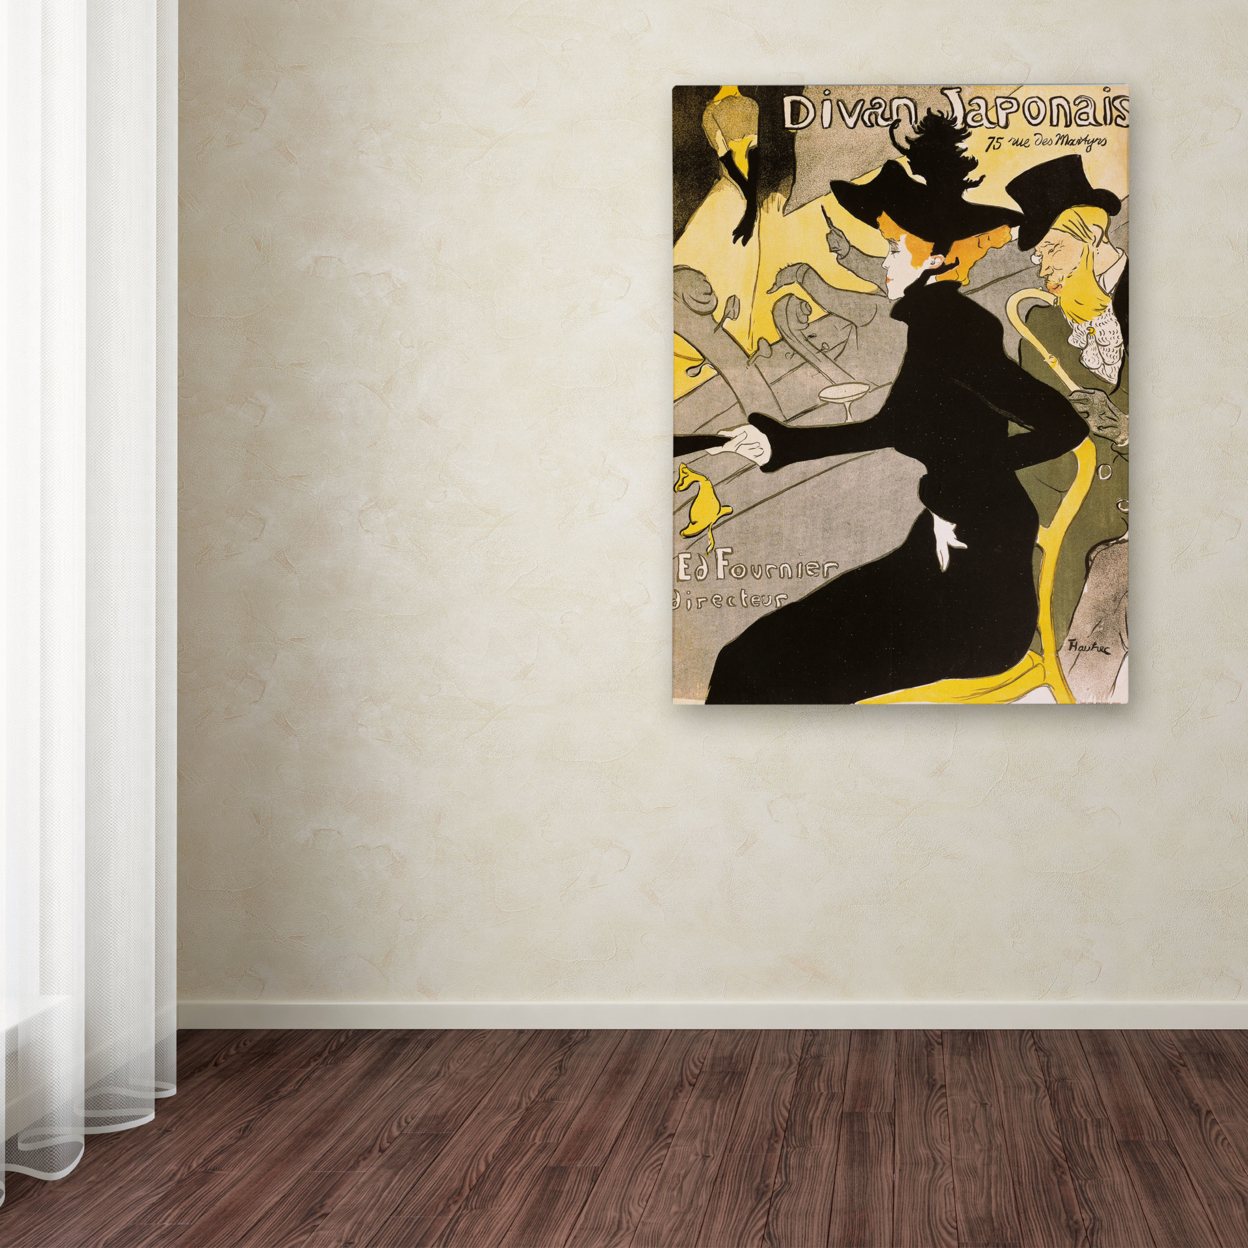 Henri Toulouse-Lautrec 'Divan Japonais' Canvas Art 18 X 24